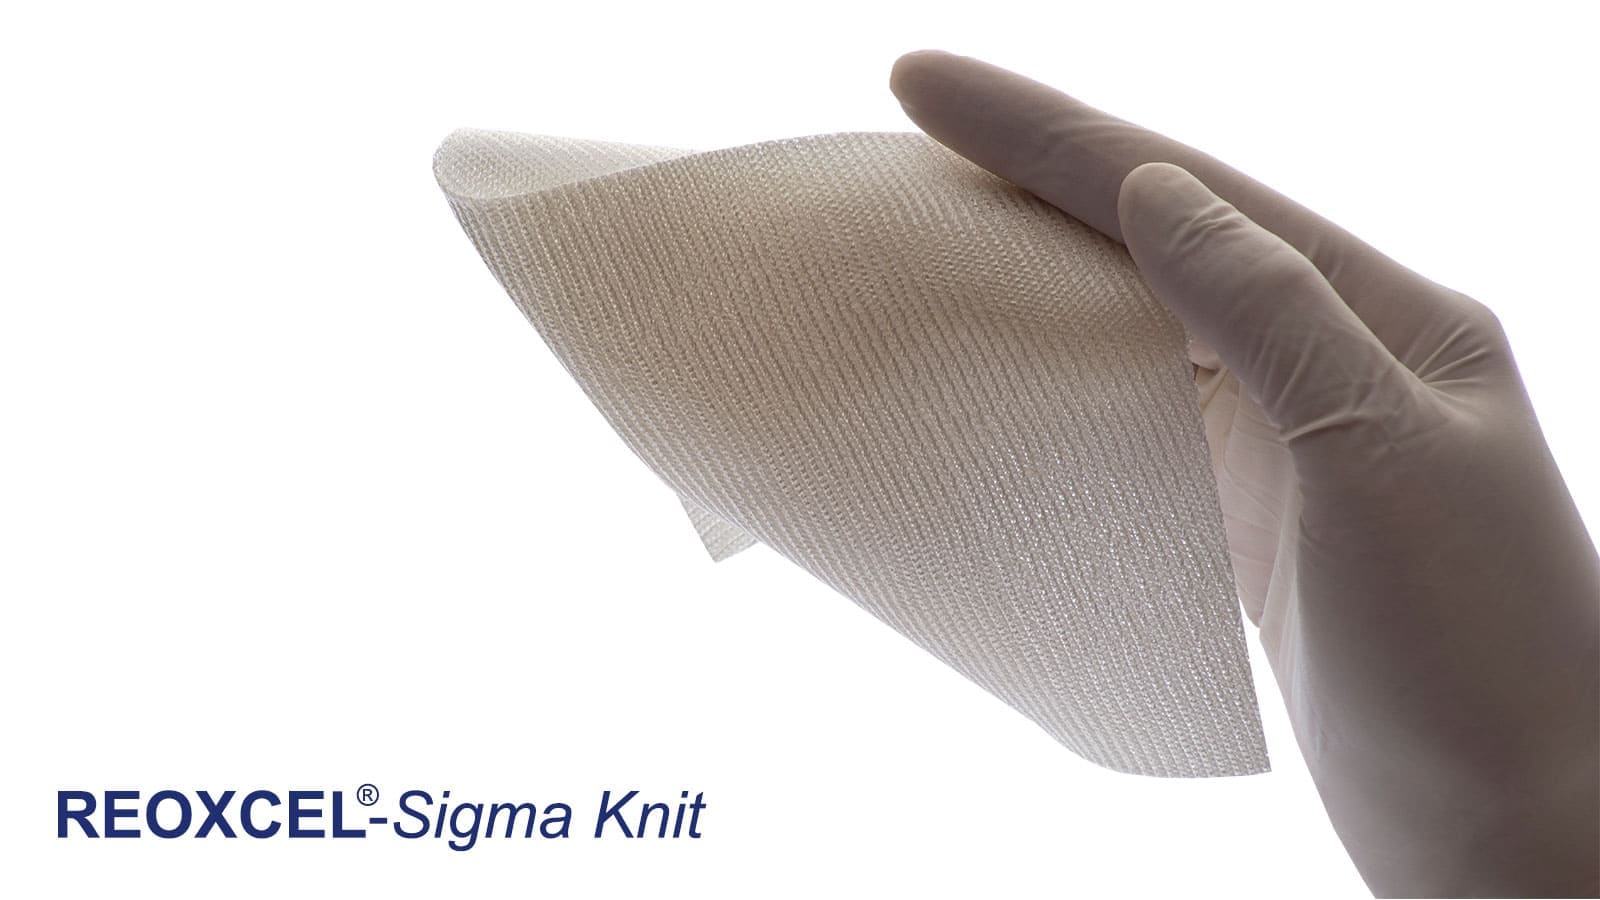 Düz Kumaş Yapısında ve Daha Kalın Reoxcel Sigma Knit Emilebilir Kanama Durdurucu, Hemostat